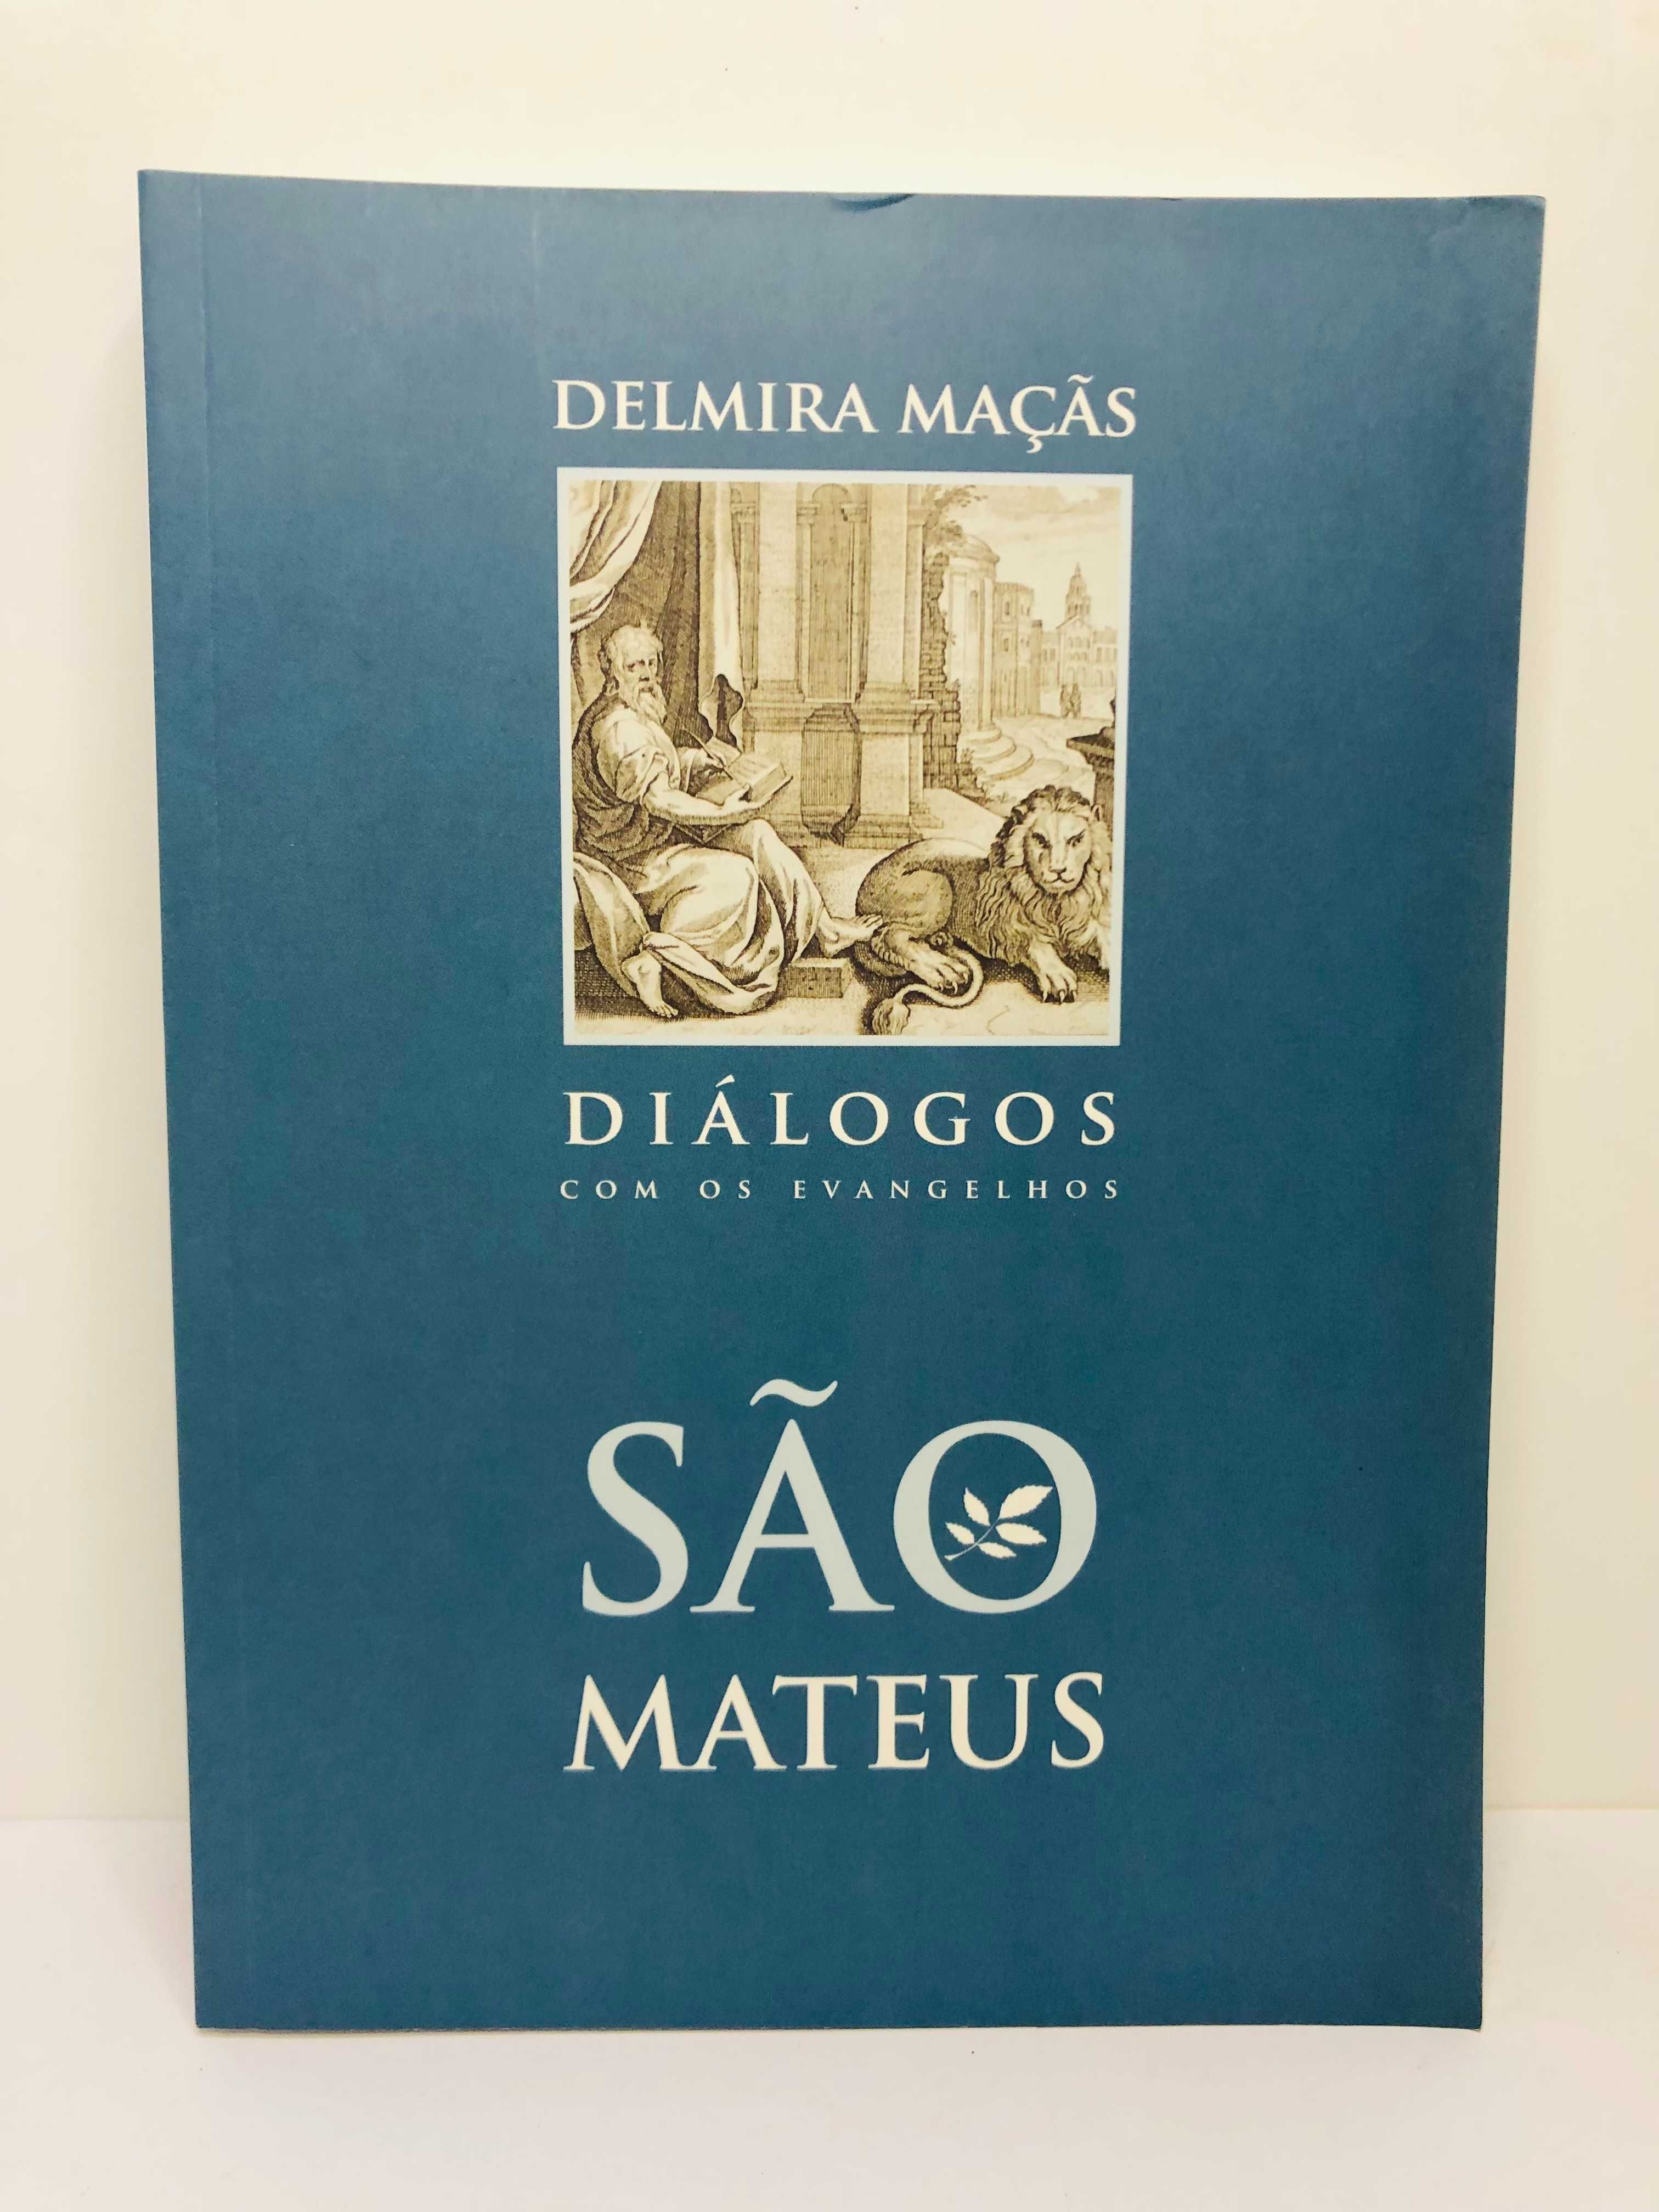 São Mateus (Diálogos) - Delmira Maçãs